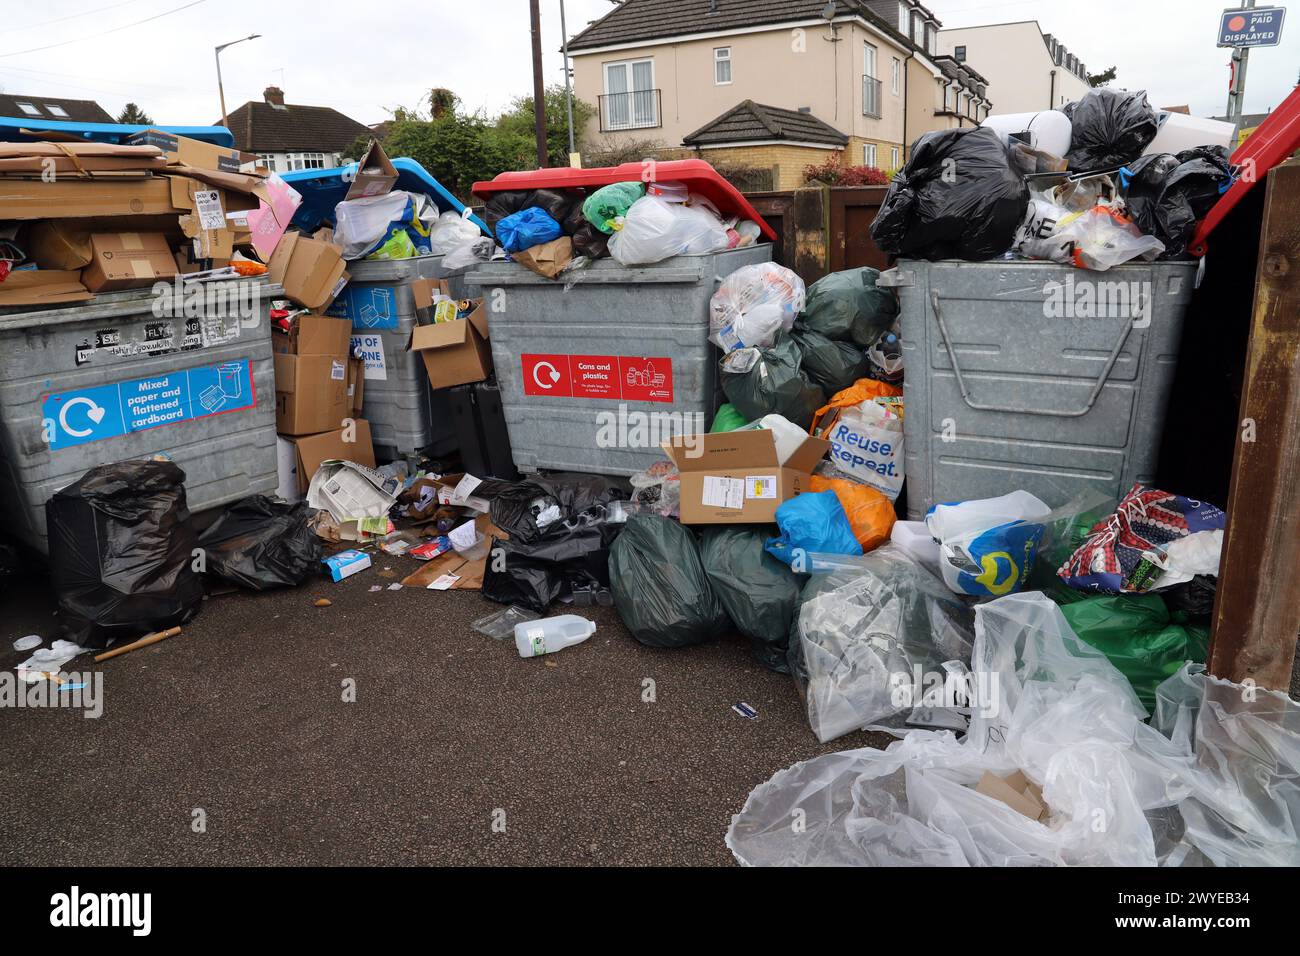 Desbordamiento de contenedores de reciclaje en una instalación de recolección del ayuntamiento local Foto de stock